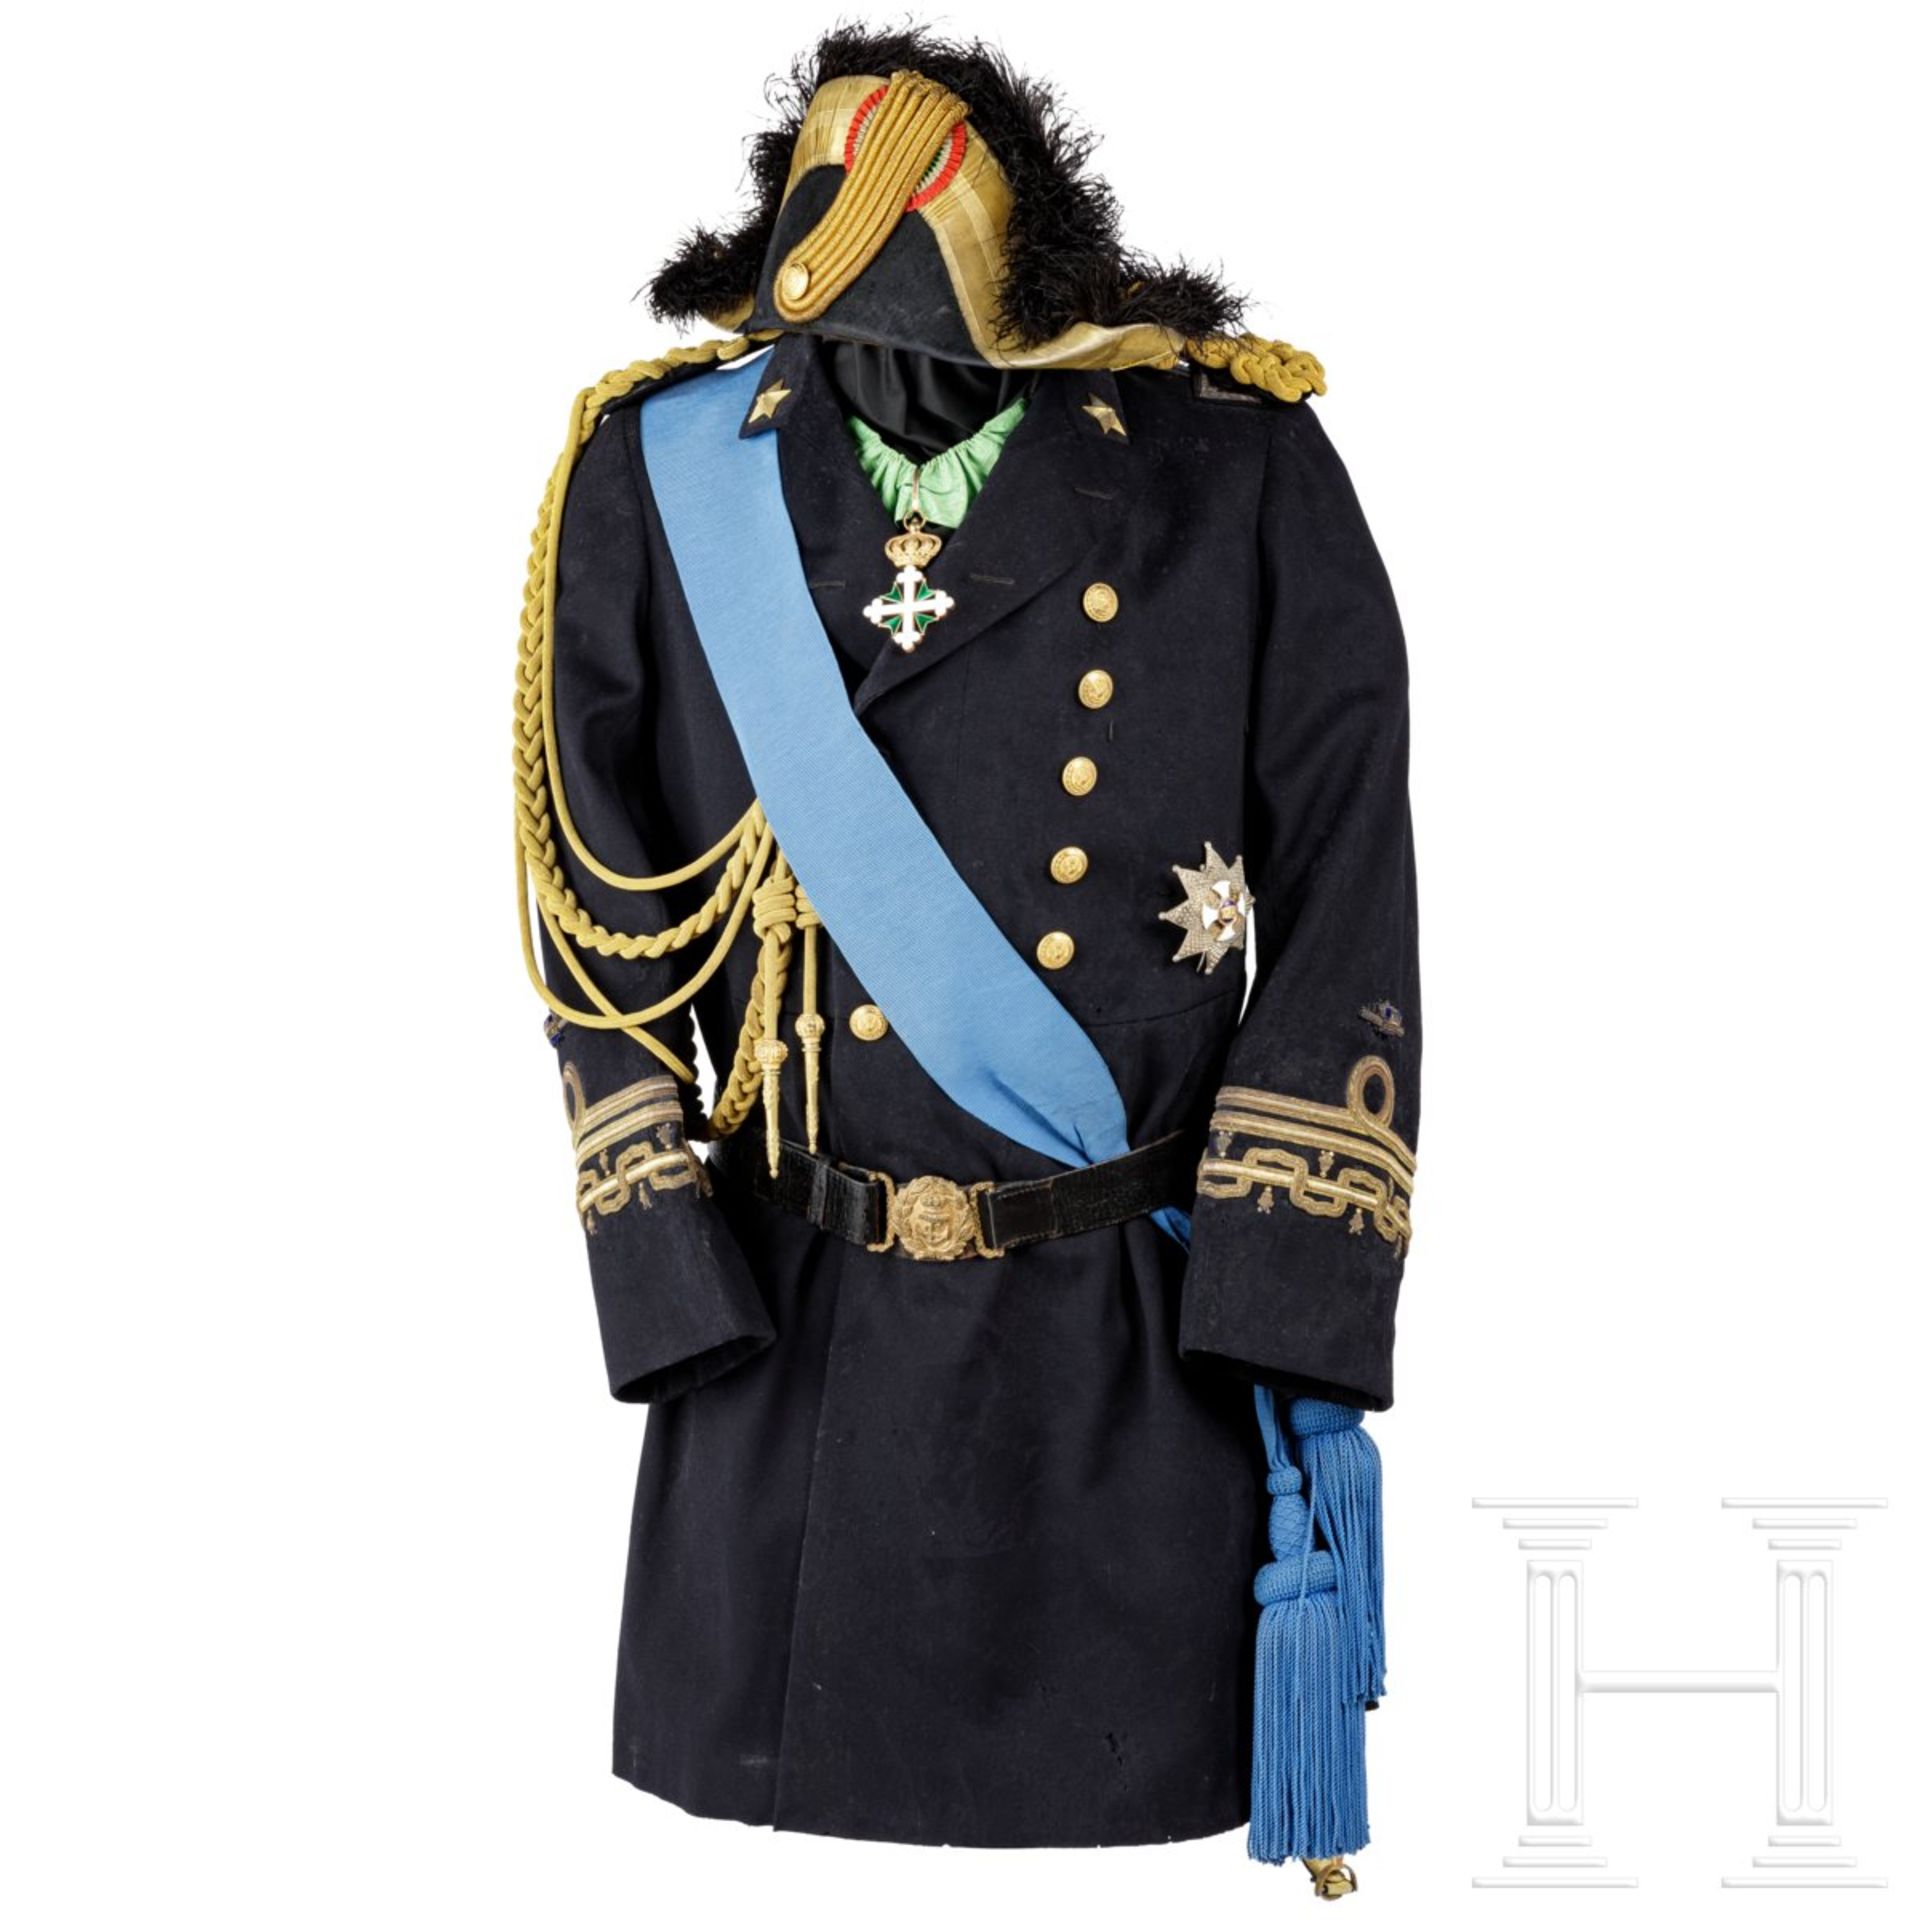 Paradeuniform von Amero d'Aste (1853 – 1931), Admiral der Königlich Italienischen Marine "Regia